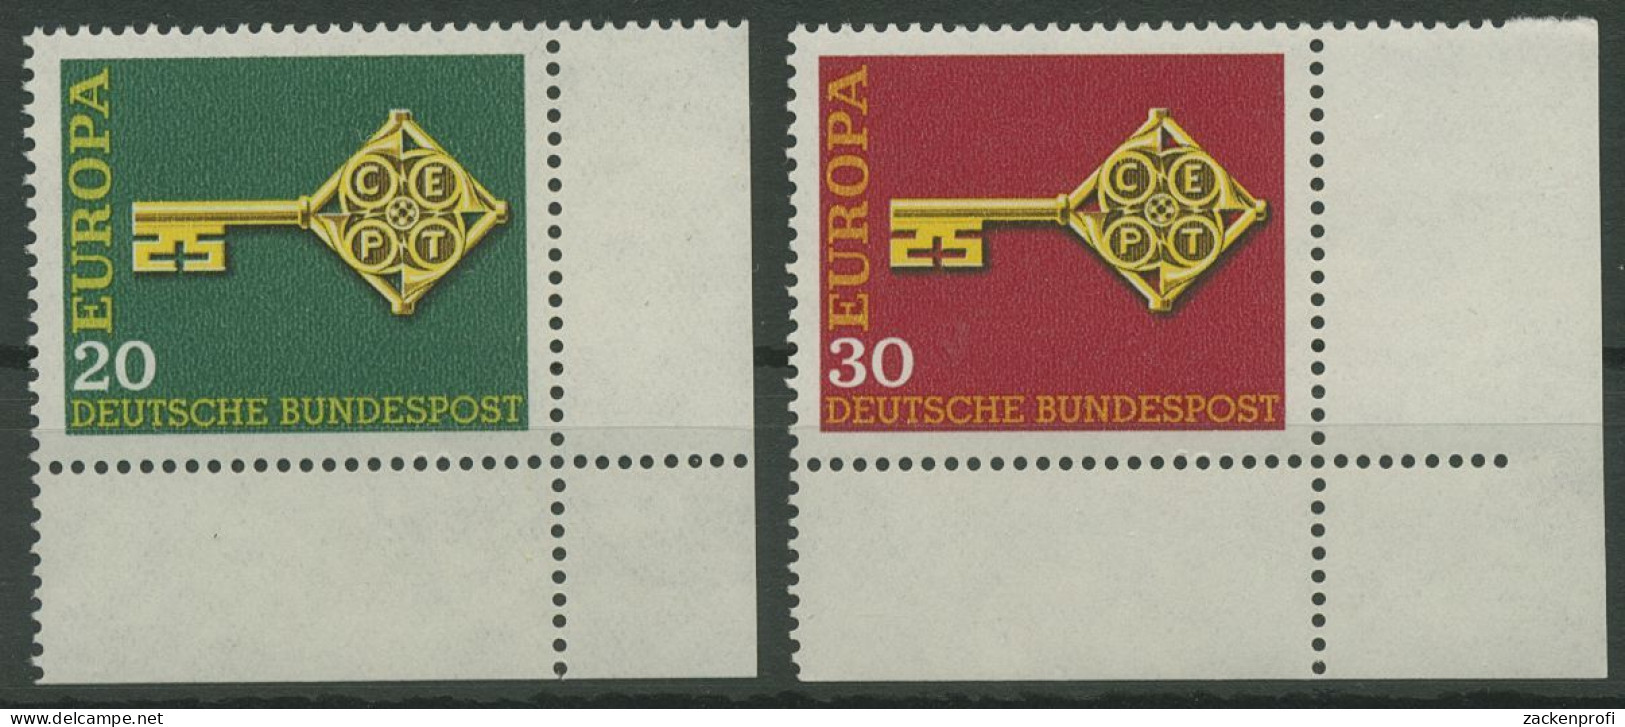 Bund 1968 Europa CEPT 559/60 Ecke 4 Unten Rechts Postfrisch (E843) - Unused Stamps